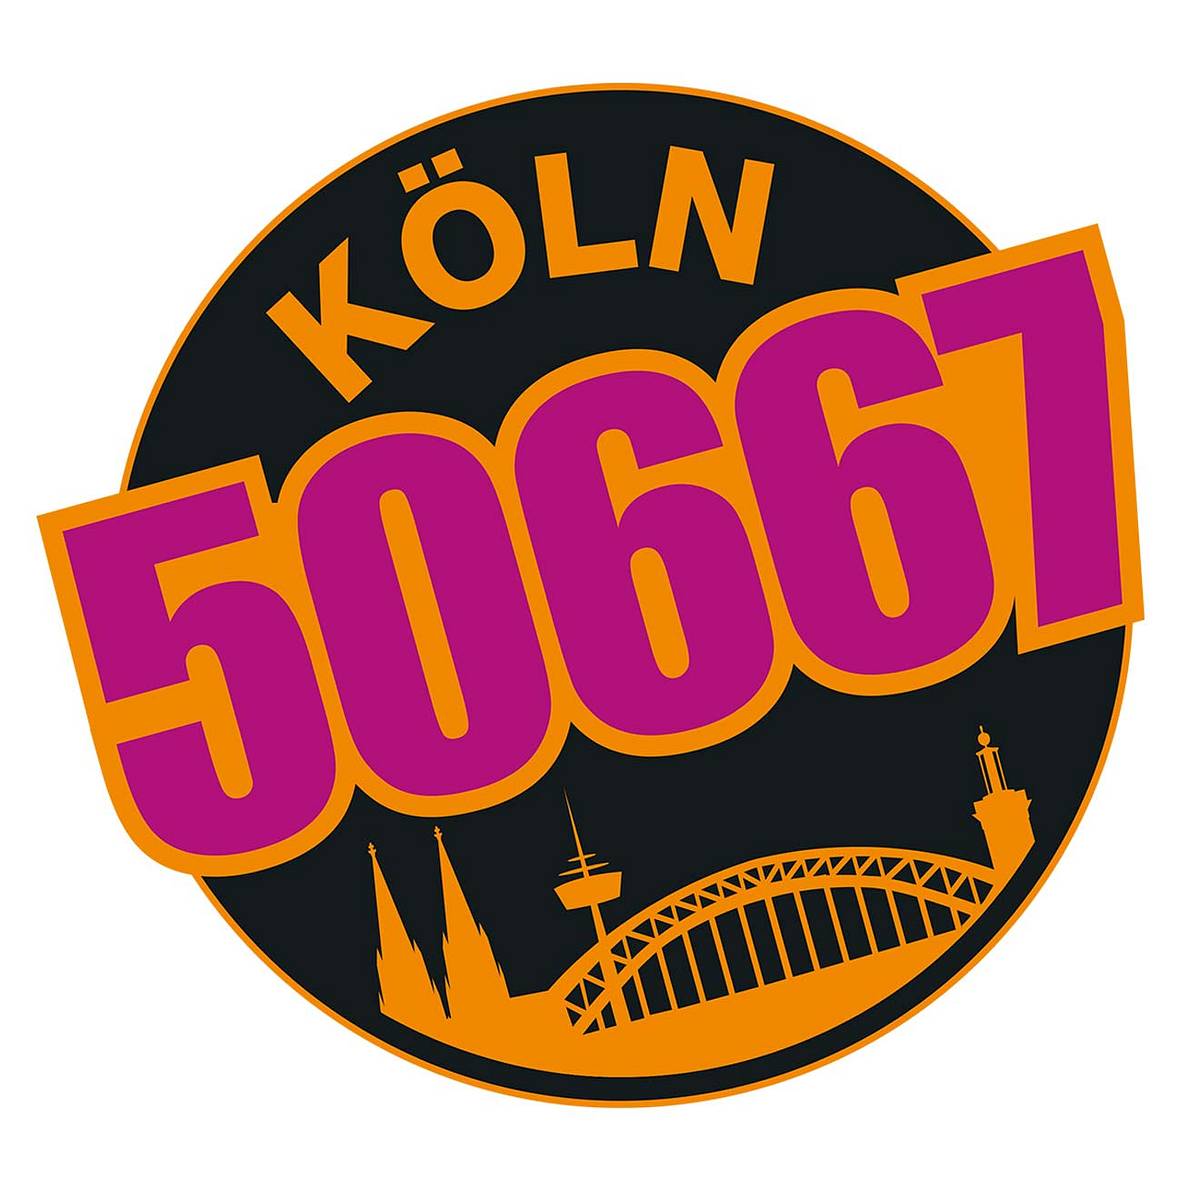 So heißen die Köln 50667-Darsteller bei Instagram, Facebook, YouTube und Snapchat